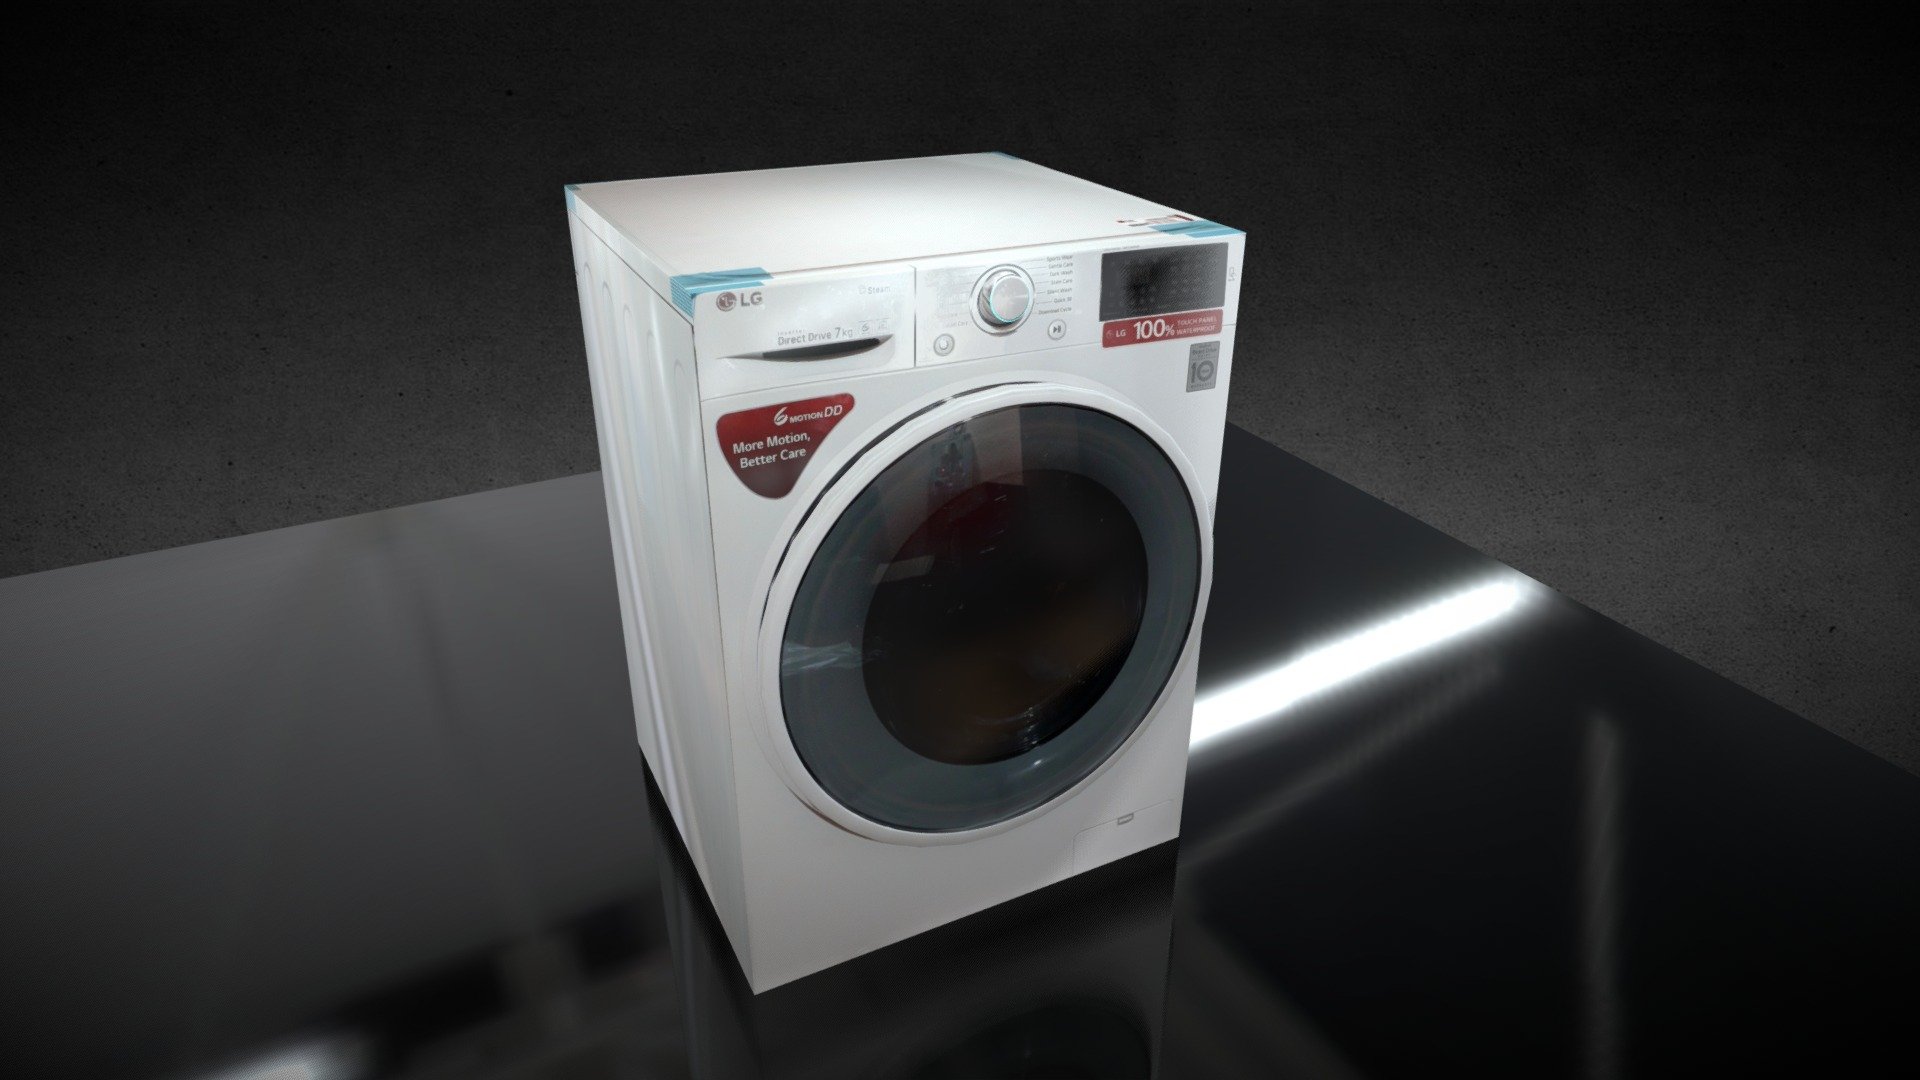 Washing Machine LG FHT1007 - Download Free 3D model by ABHISHEK VERMA